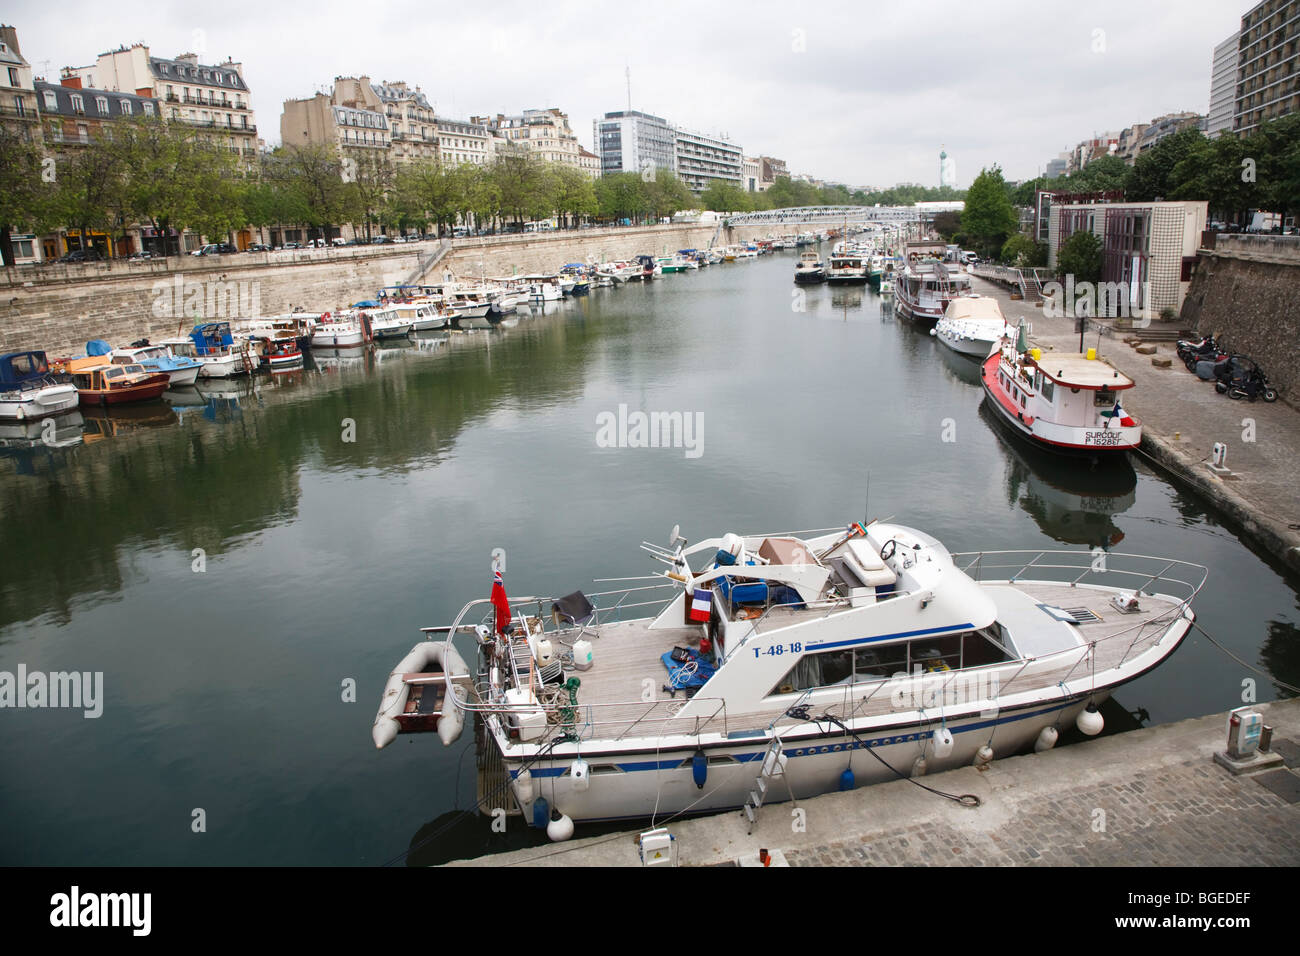 Port de plaisance de paris arsenal hi-res stock photography and images -  Alamy